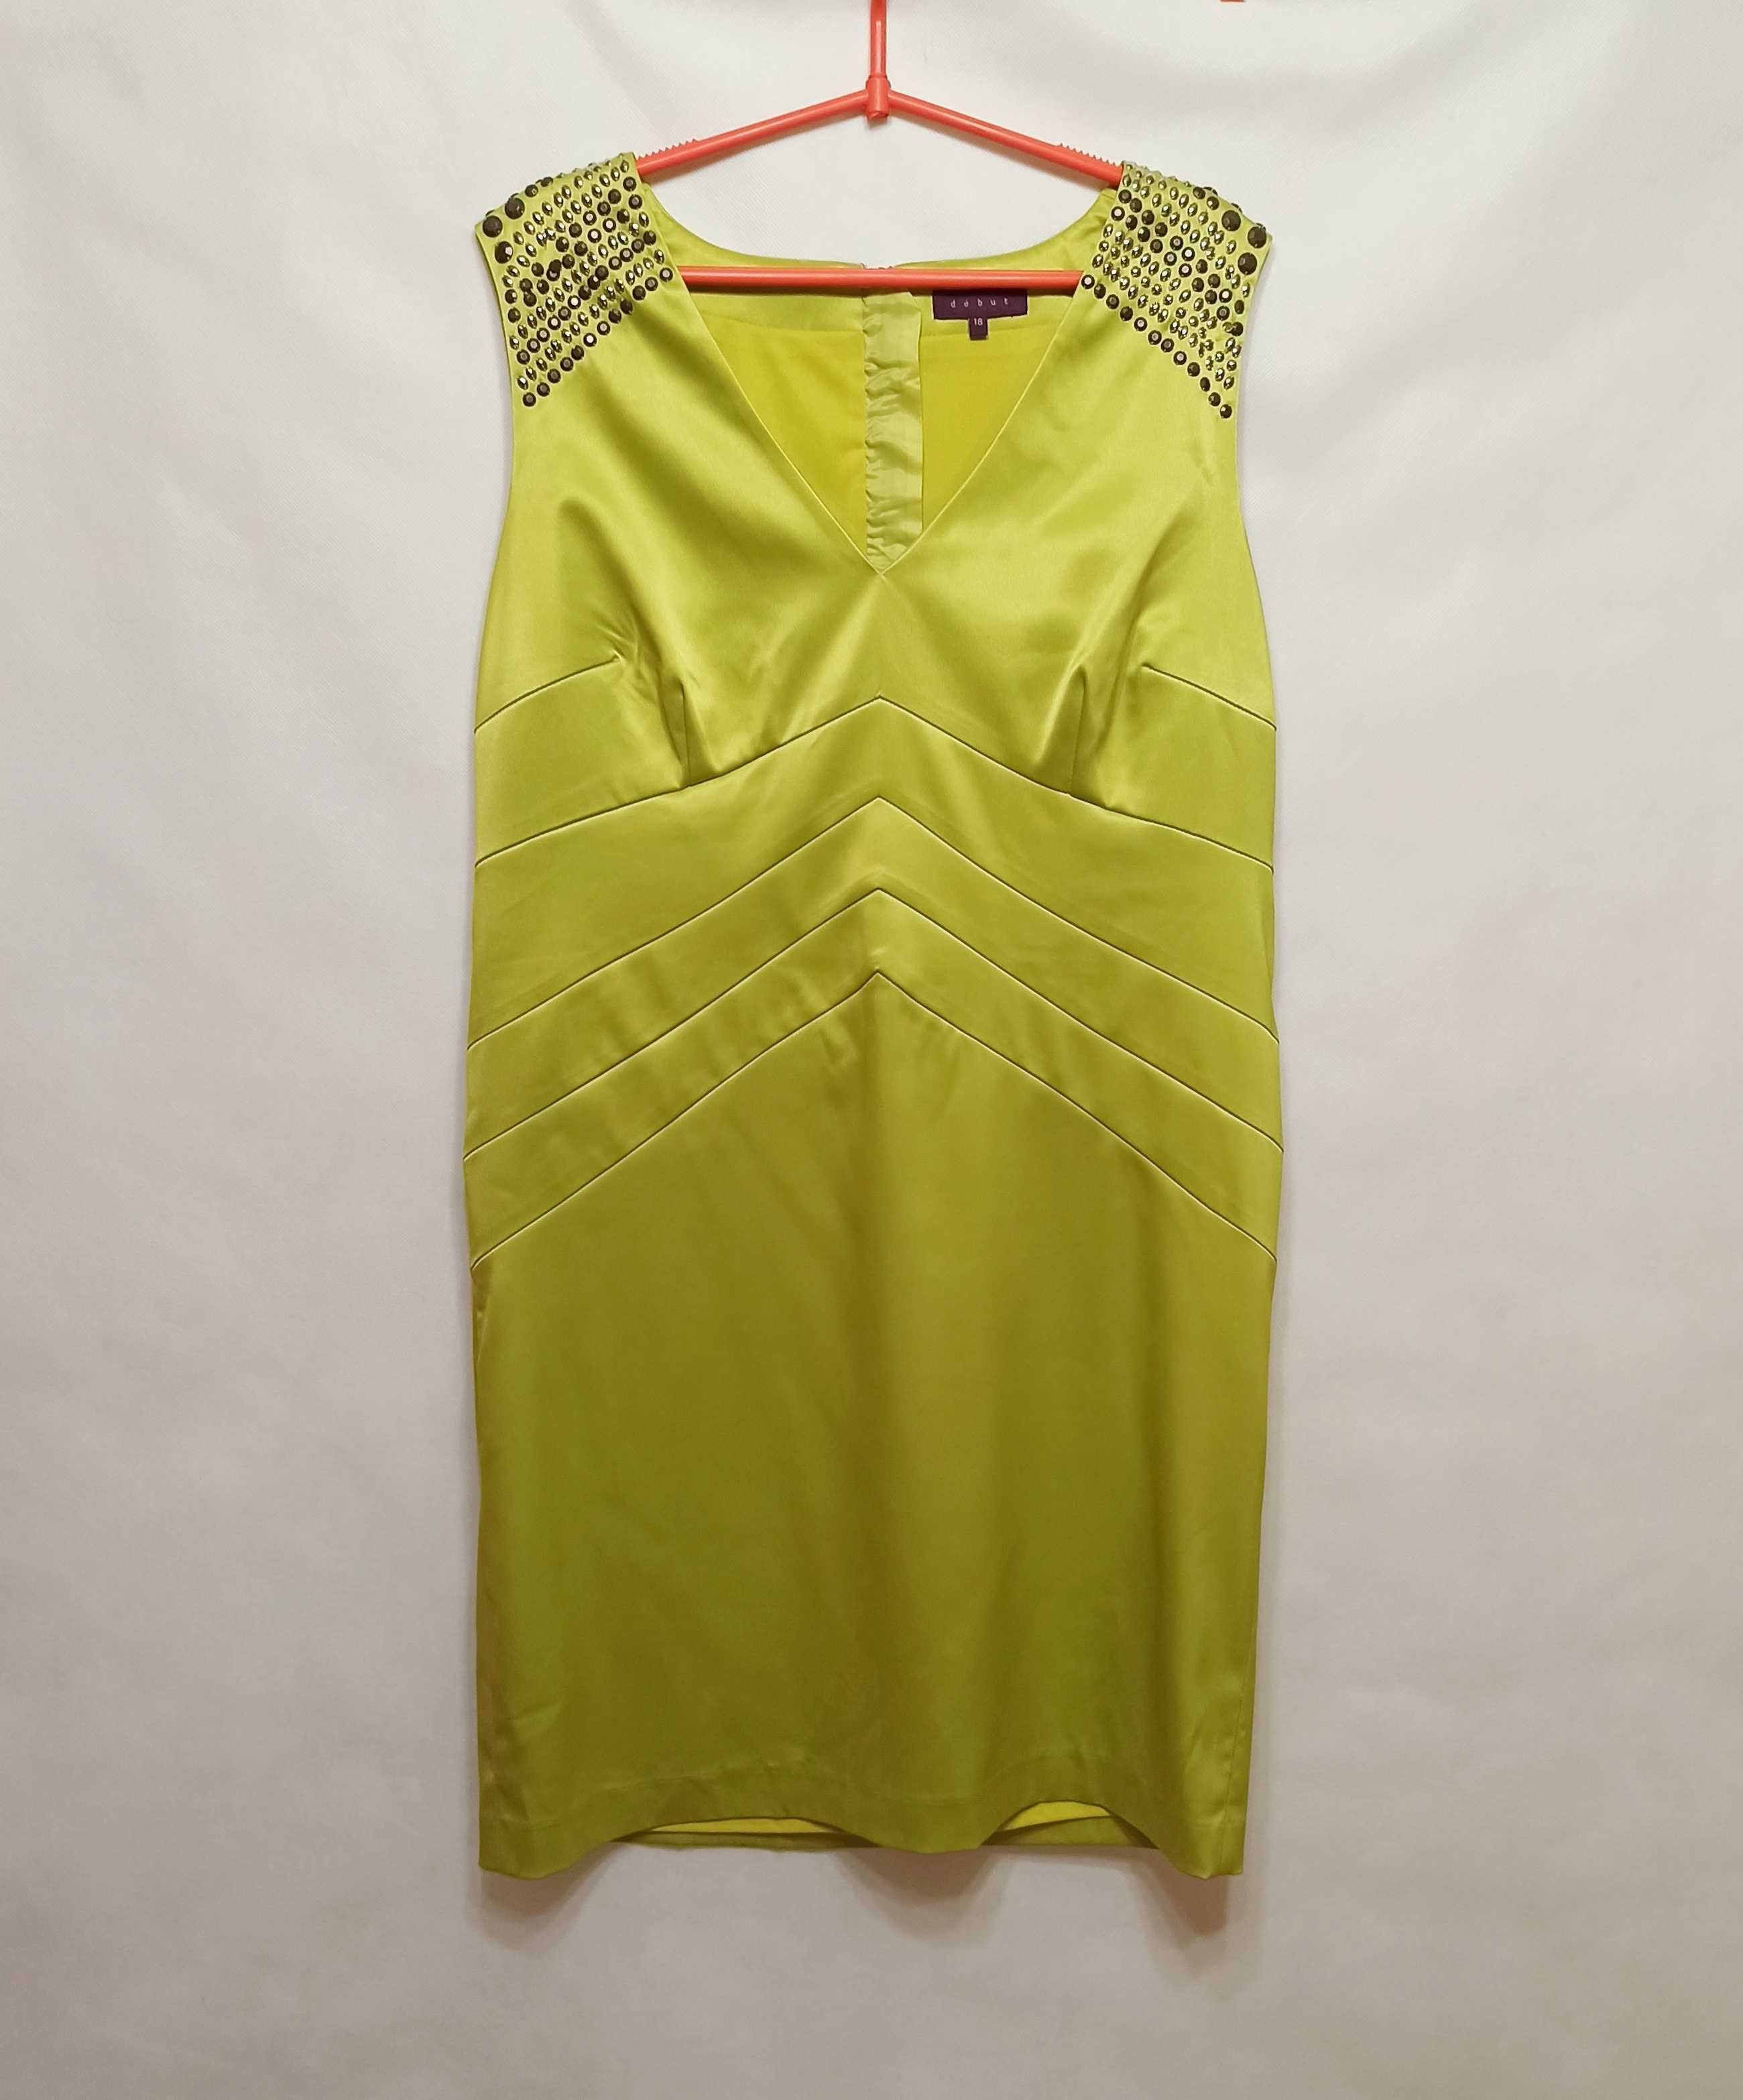 Limonkowa zielona sukienka ołówkowa Début zdobiona 46 XXXL 3XL